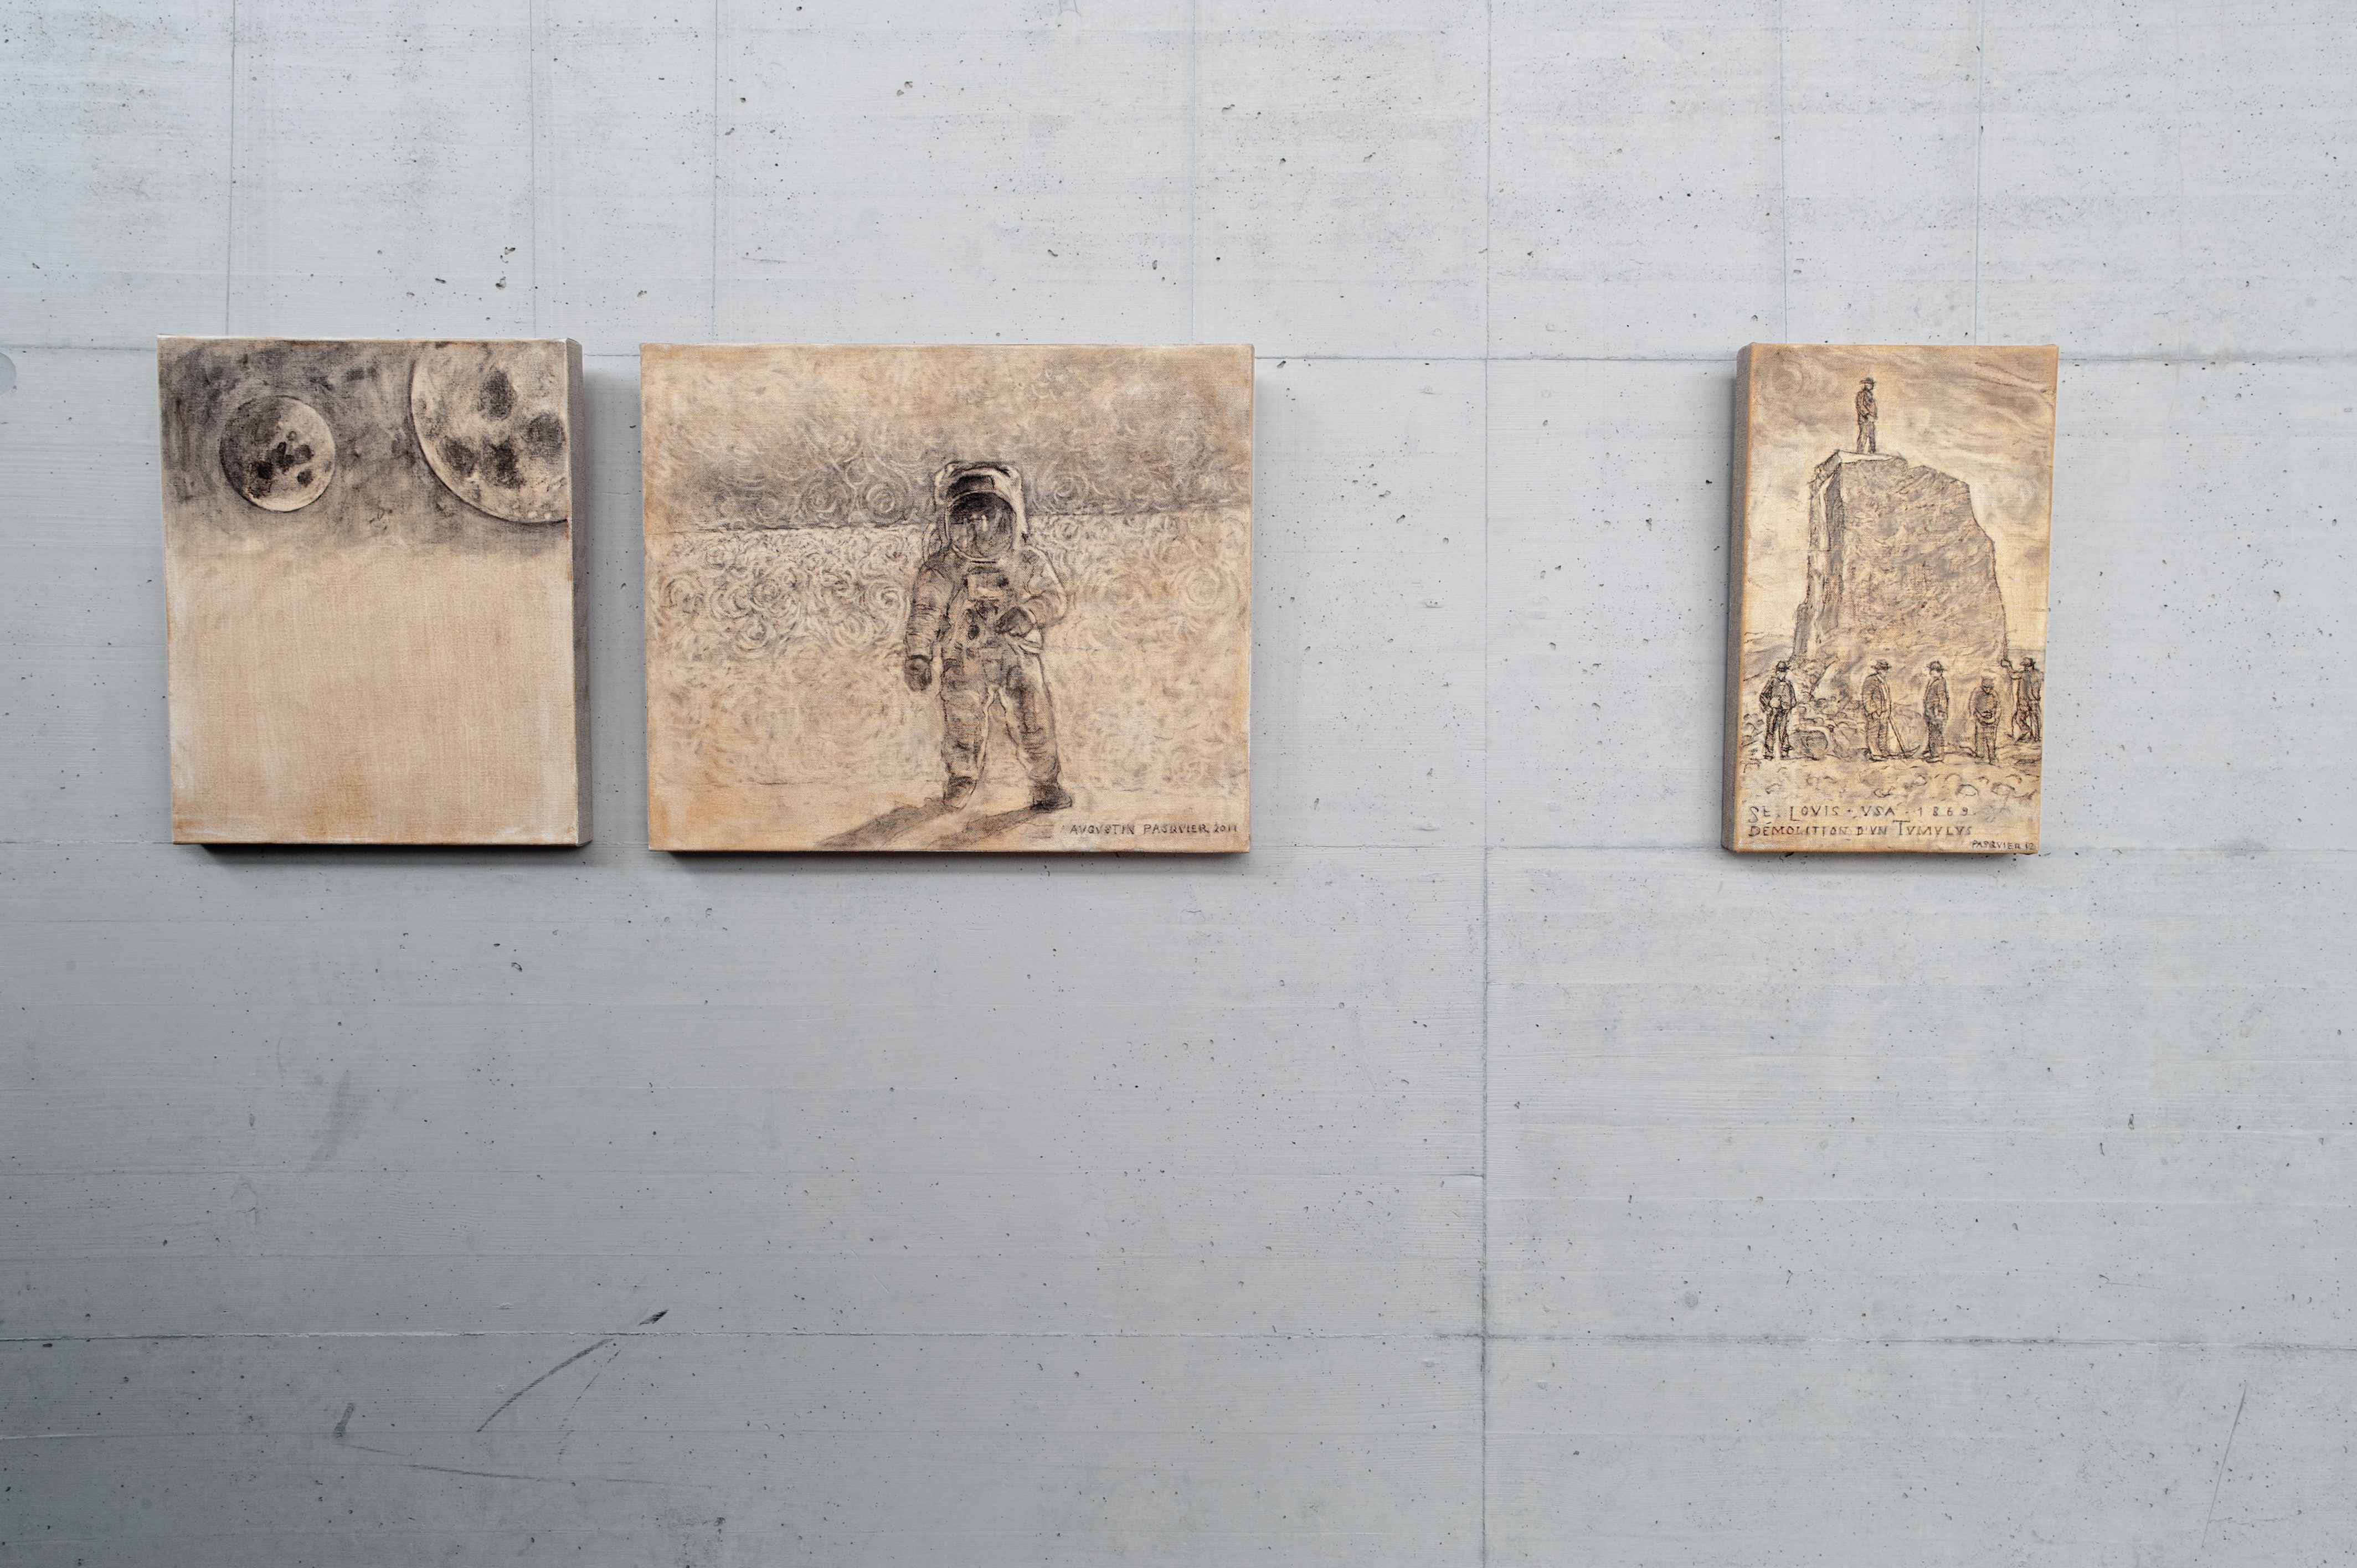 Augustin Pasquier, Tumulus, 2011-2012, installation de 70 toiles, tempera et fusain sur toile de lin de différents formats, 3 x 10 m, Espace Nuithonie Villars-sur-Glâne. Photo Ragusa